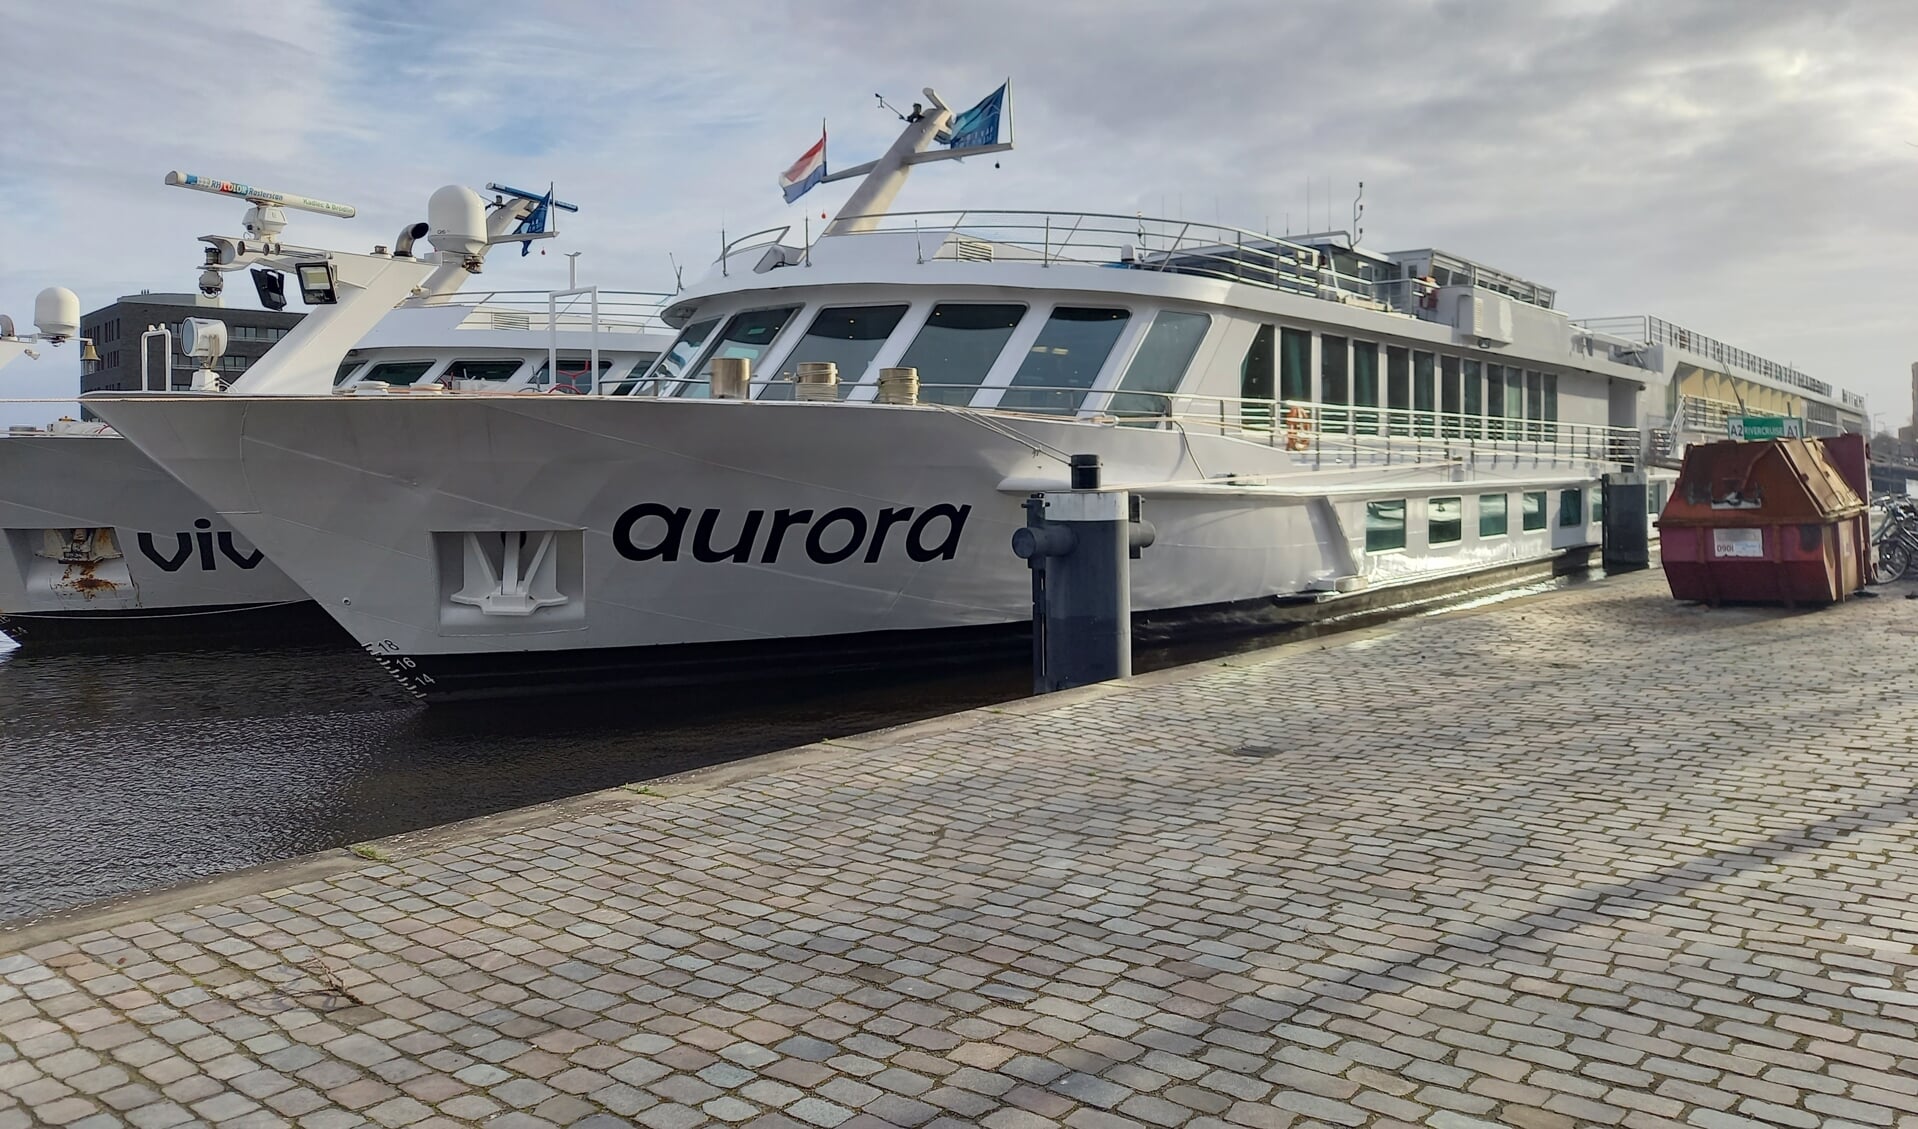 De MS Aurora wordt ondersteund door een tijdelijk schip dat is aangemeerd.